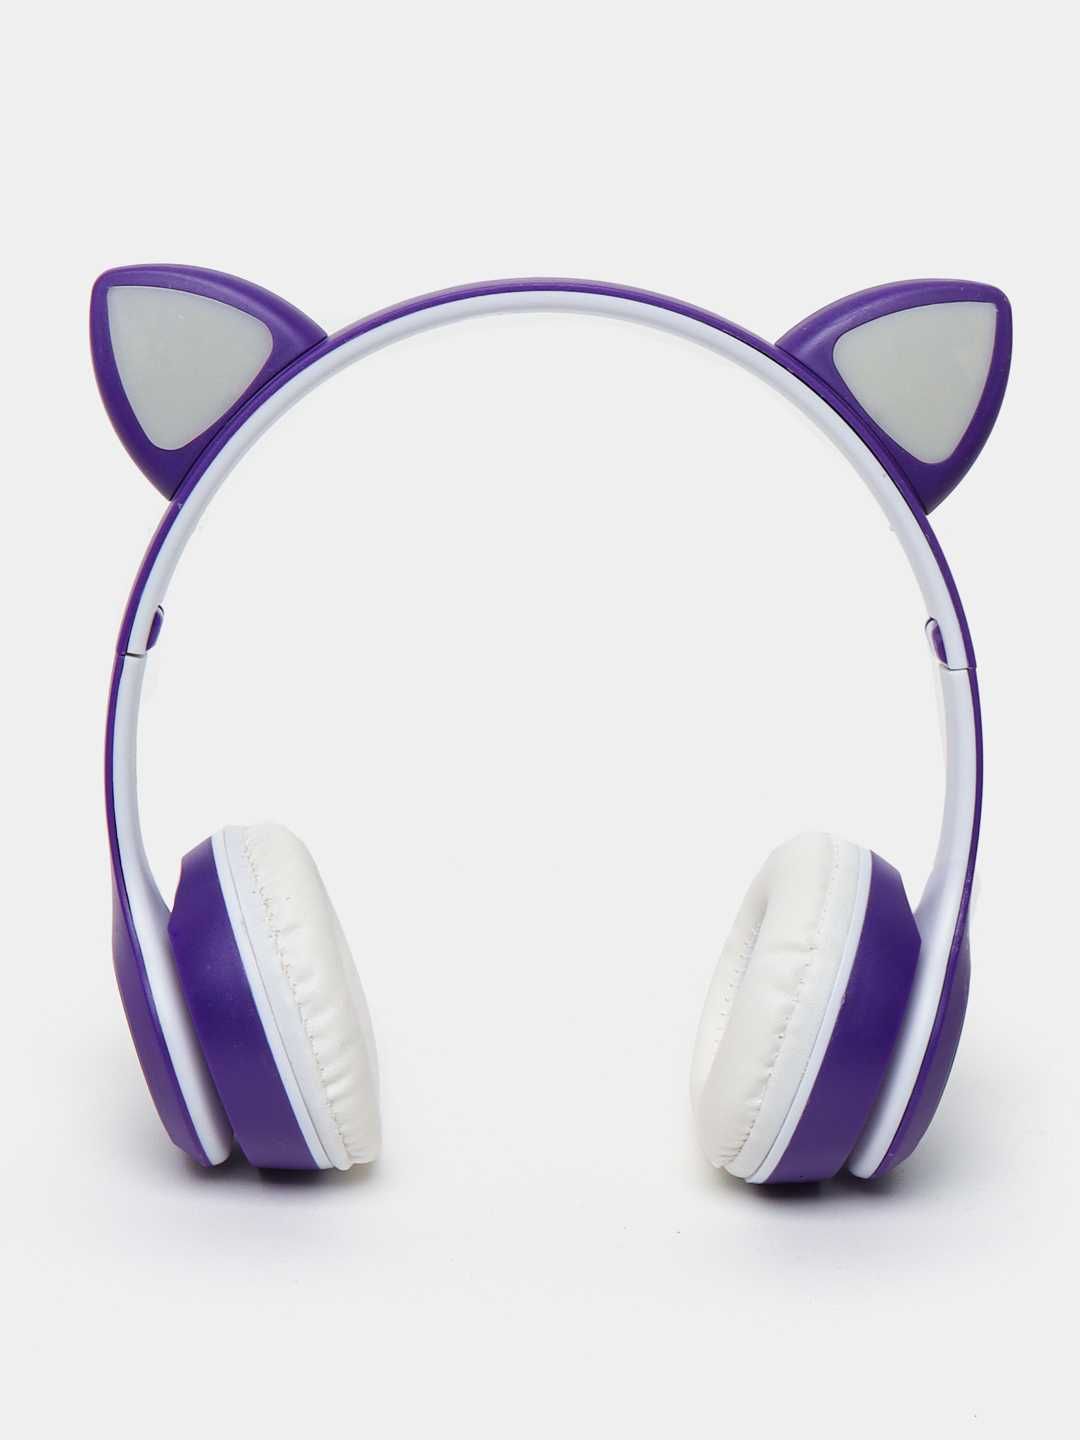 Беспроводные детские наушники Cat Ear, с Bluetooth (9 ДОНА нархи)